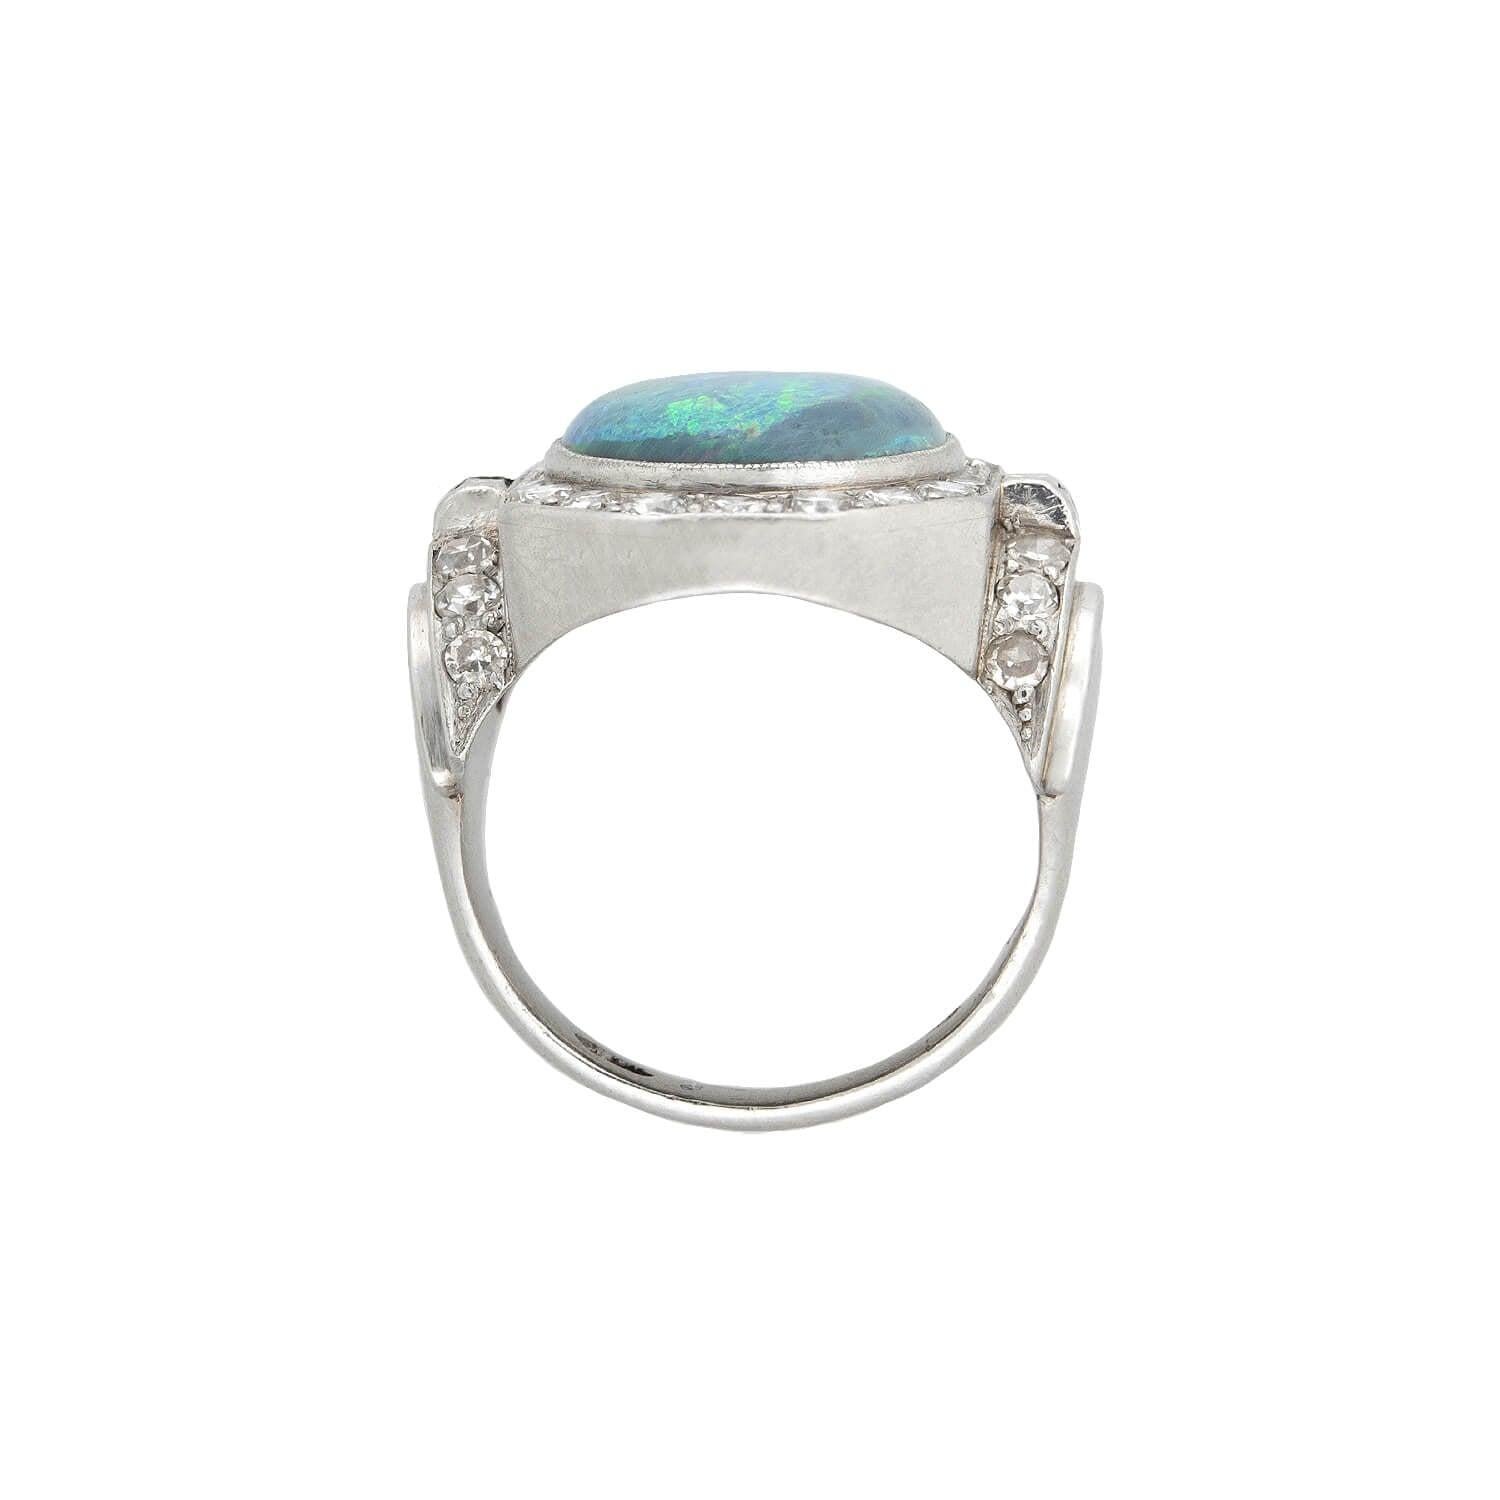 opal art deco ring